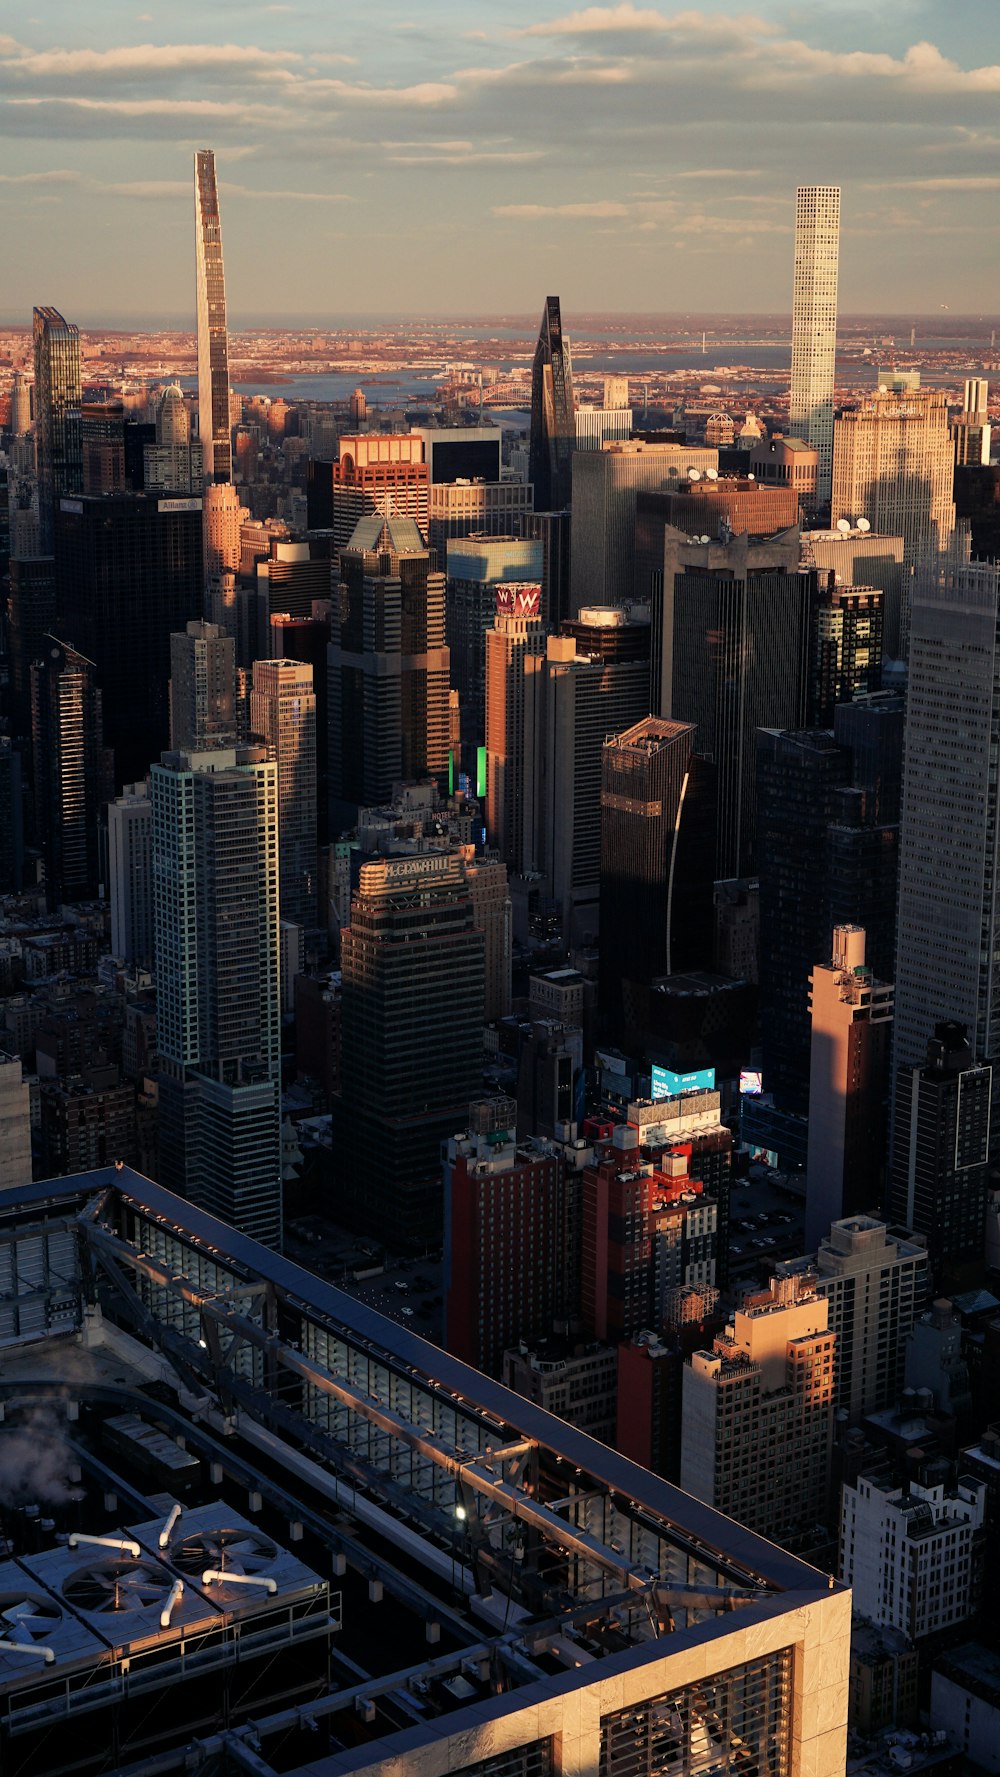 Una vista de una ciudad desde lo alto de un edificio